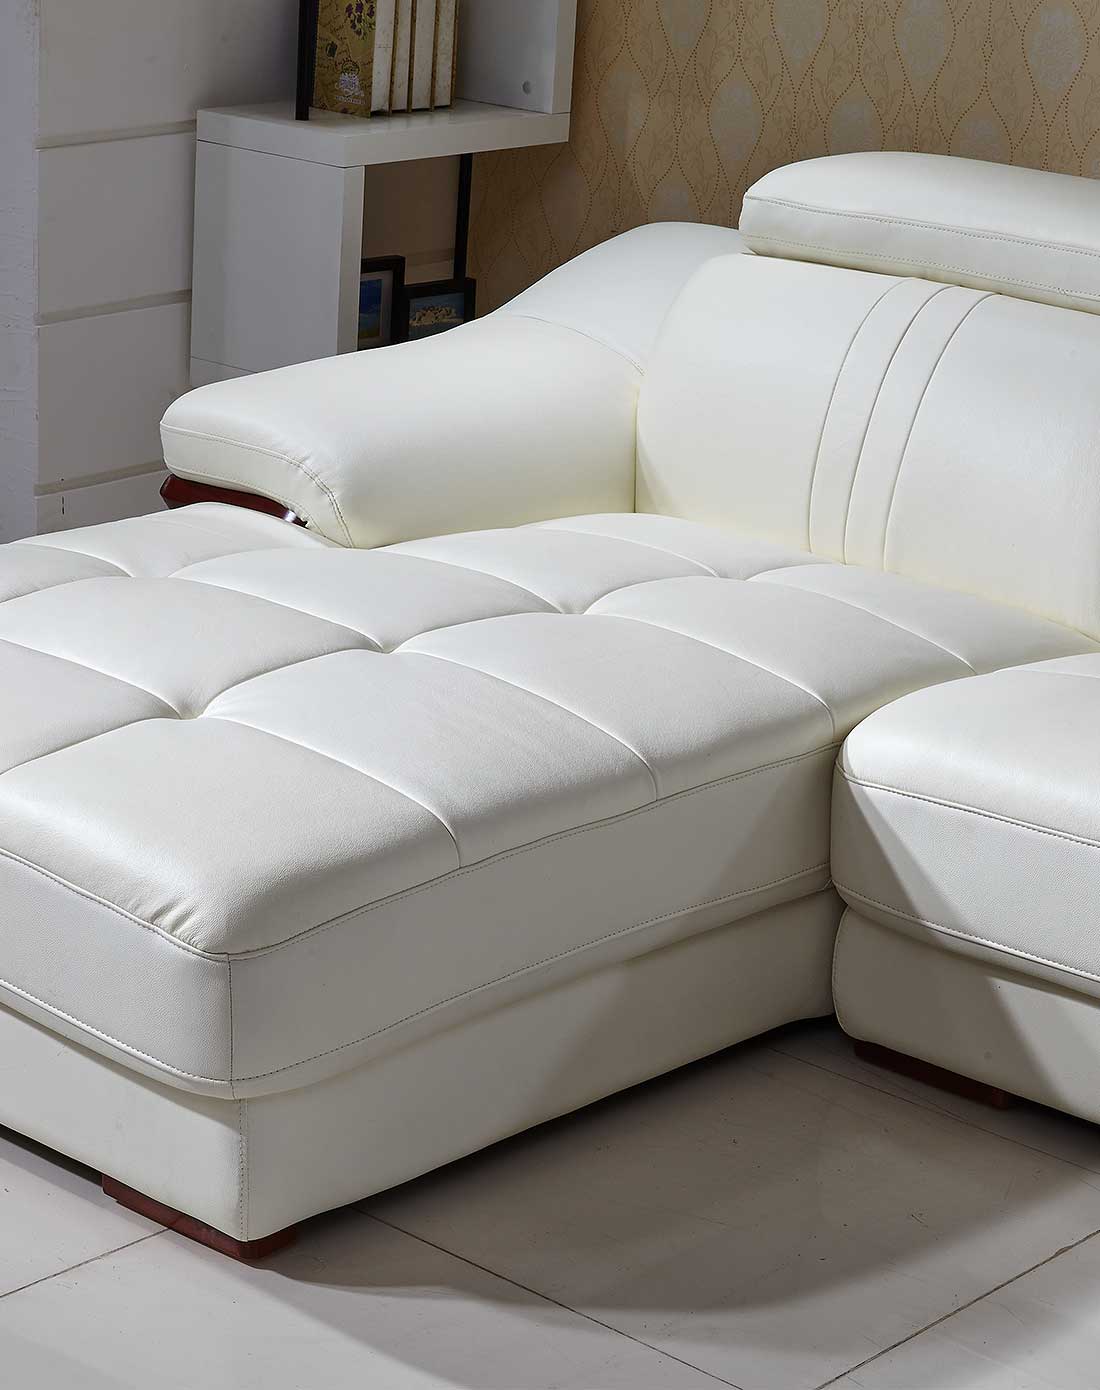 秀兰·邓波儿白色沙发图片